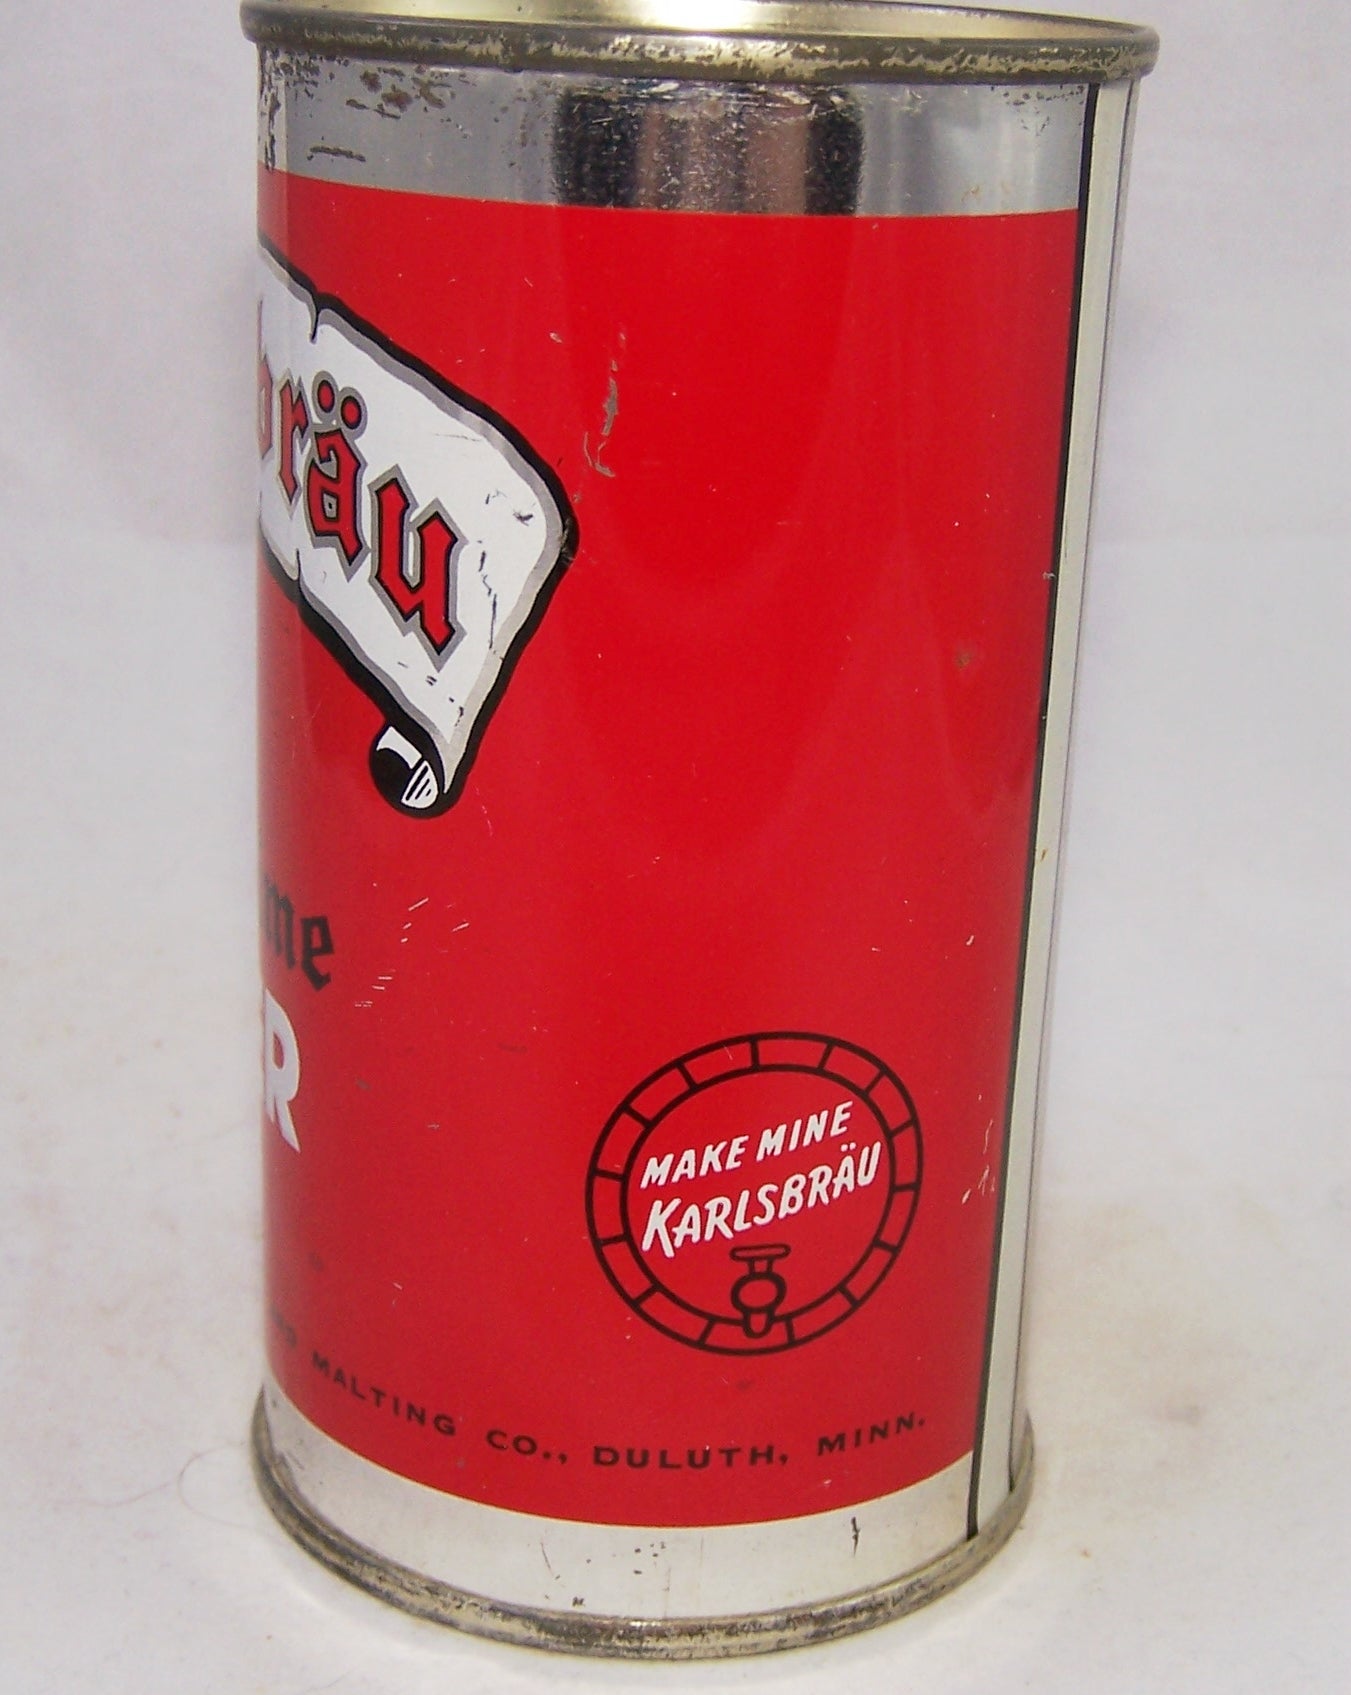 Karlsbrau Old Time Beer, USBC 87-05, Grade 1 Sold on 04/17/18